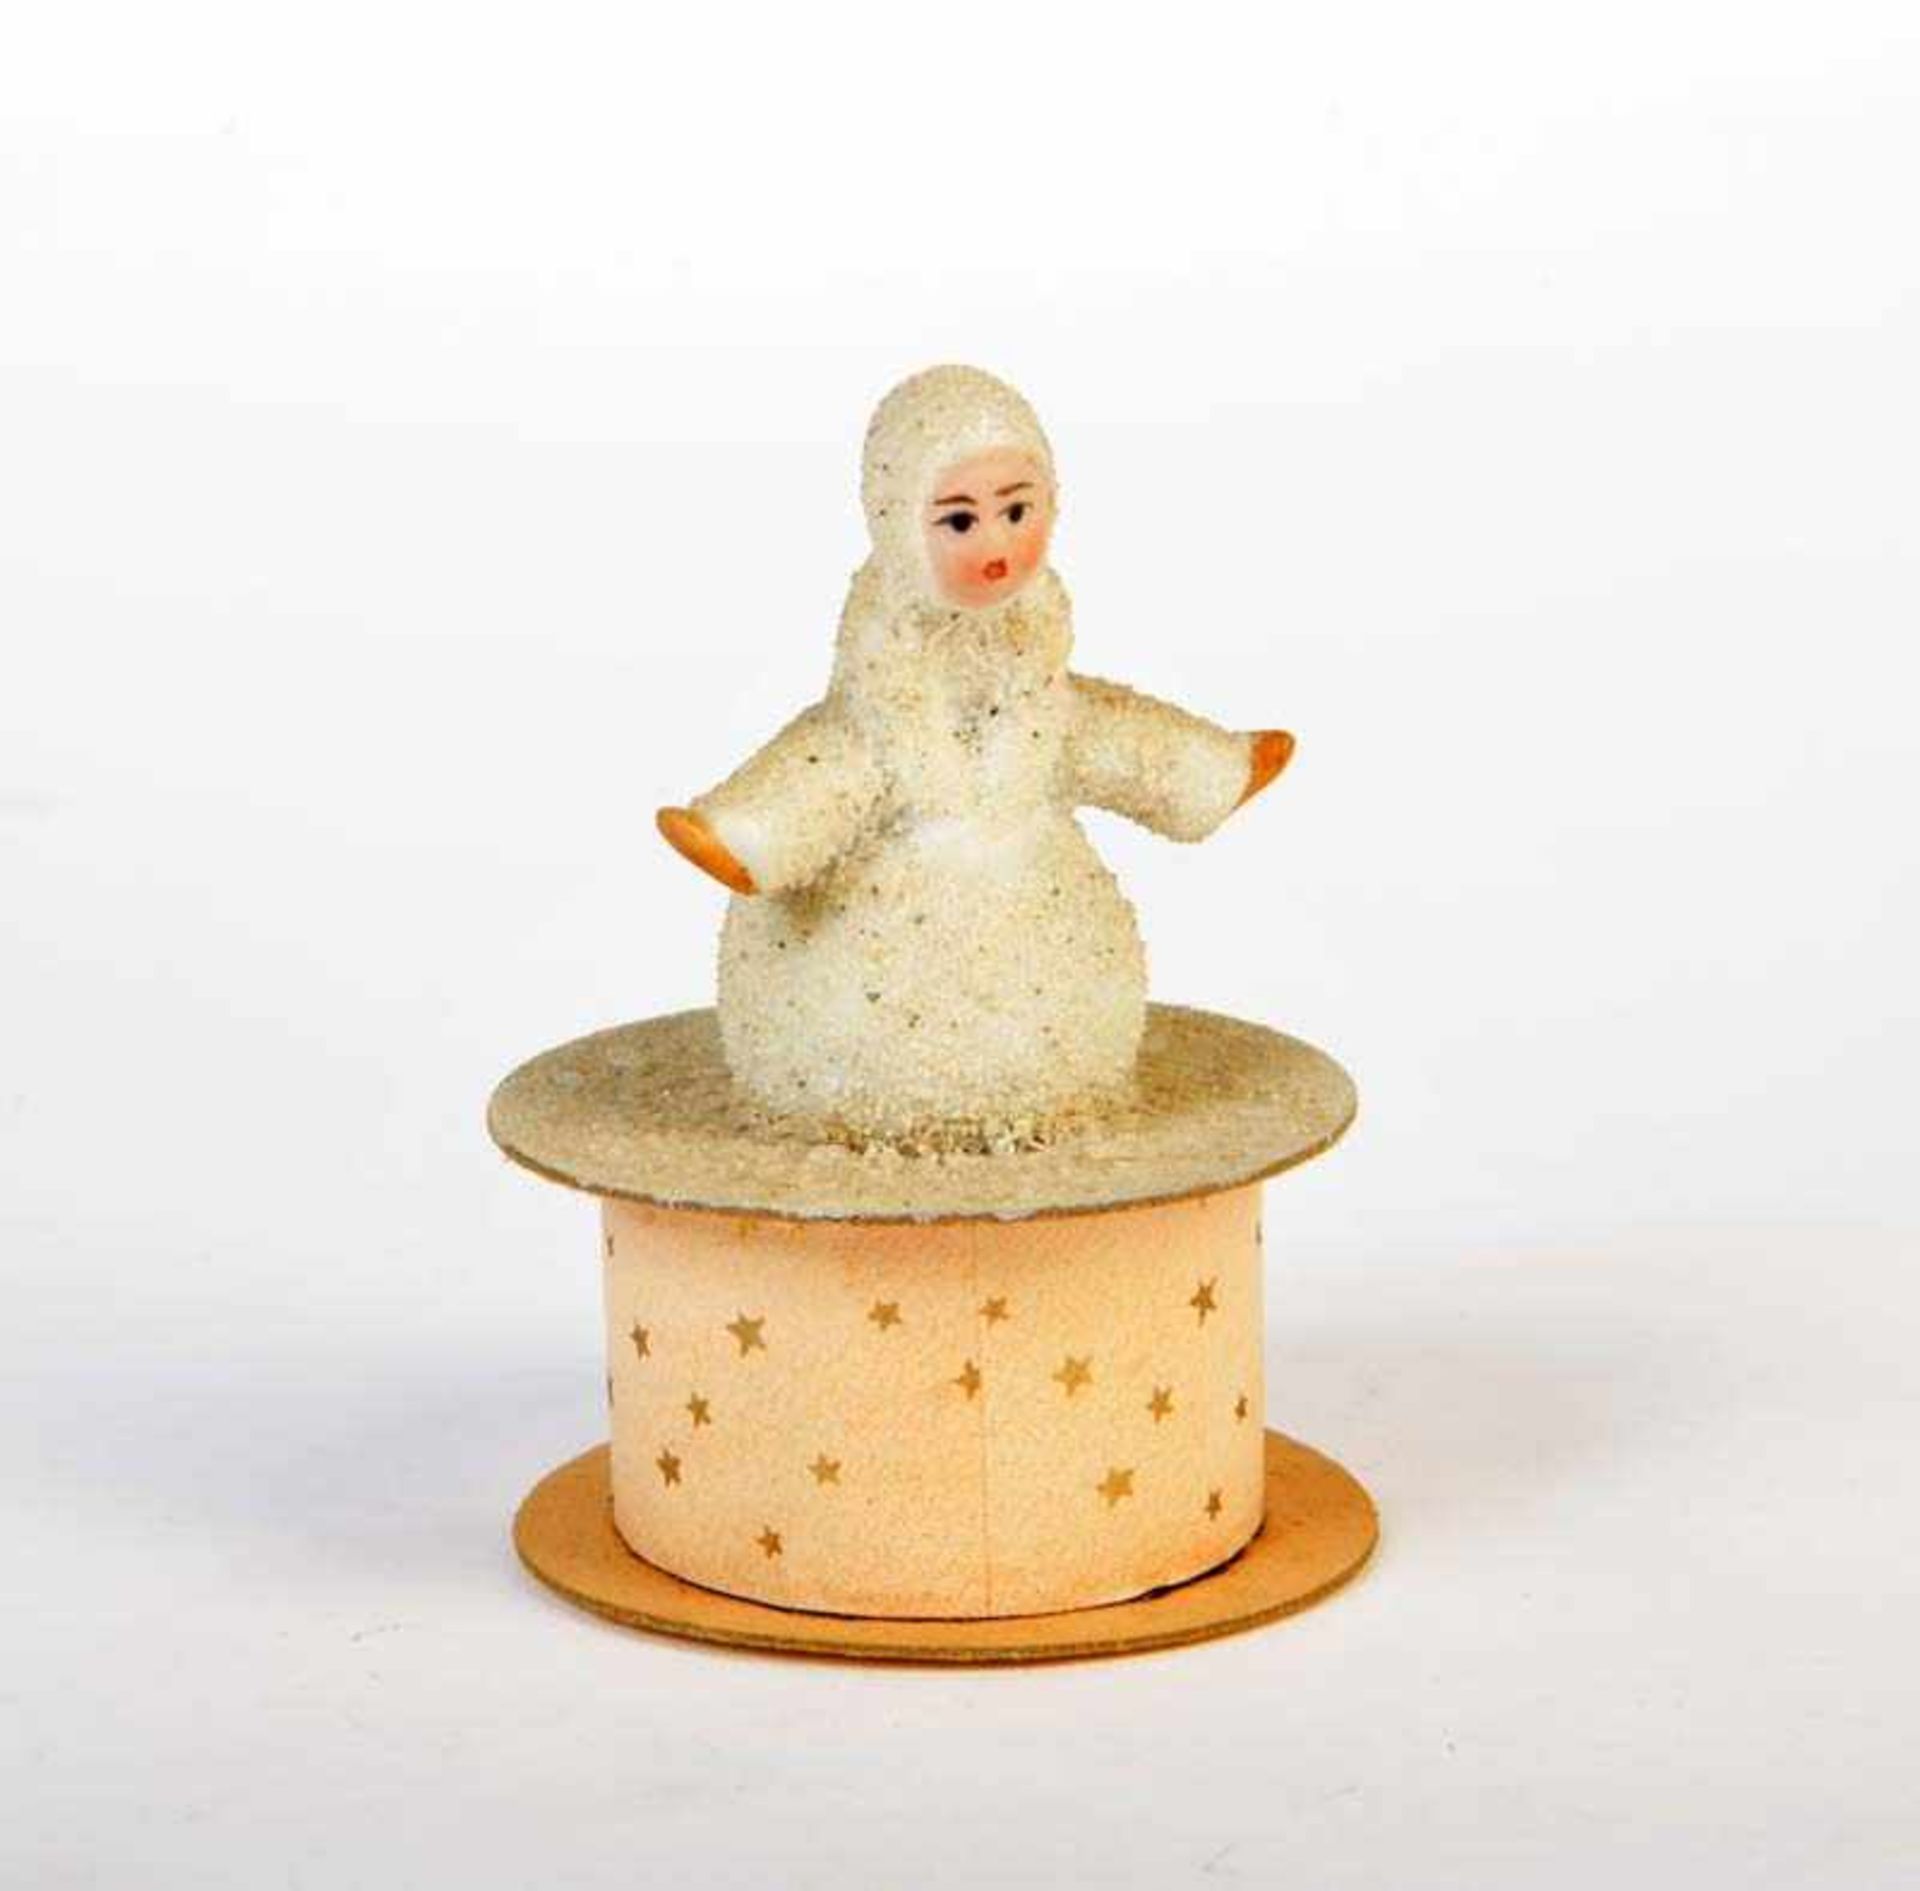 Hertwig, Schneekind auf Füllbehälter, Germany VK, 8 cm, Pappmachee + GemBw, Z 1Hertwig, Snow Child